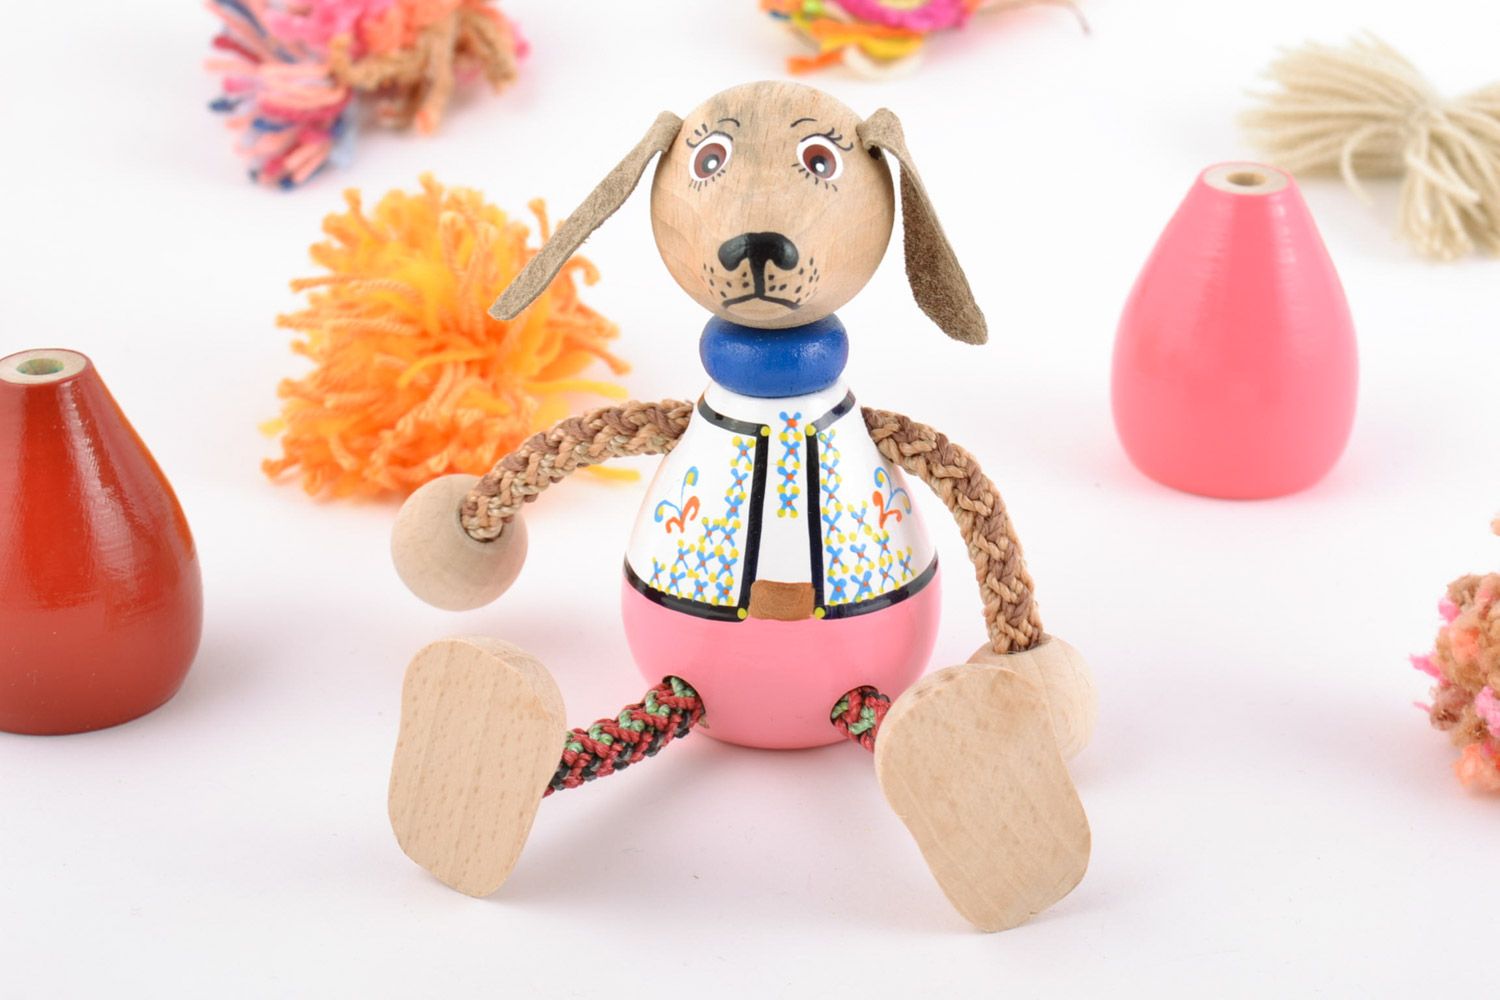 Jouet en bois écologique chien fait main de créateur peint pour enfant photo 1